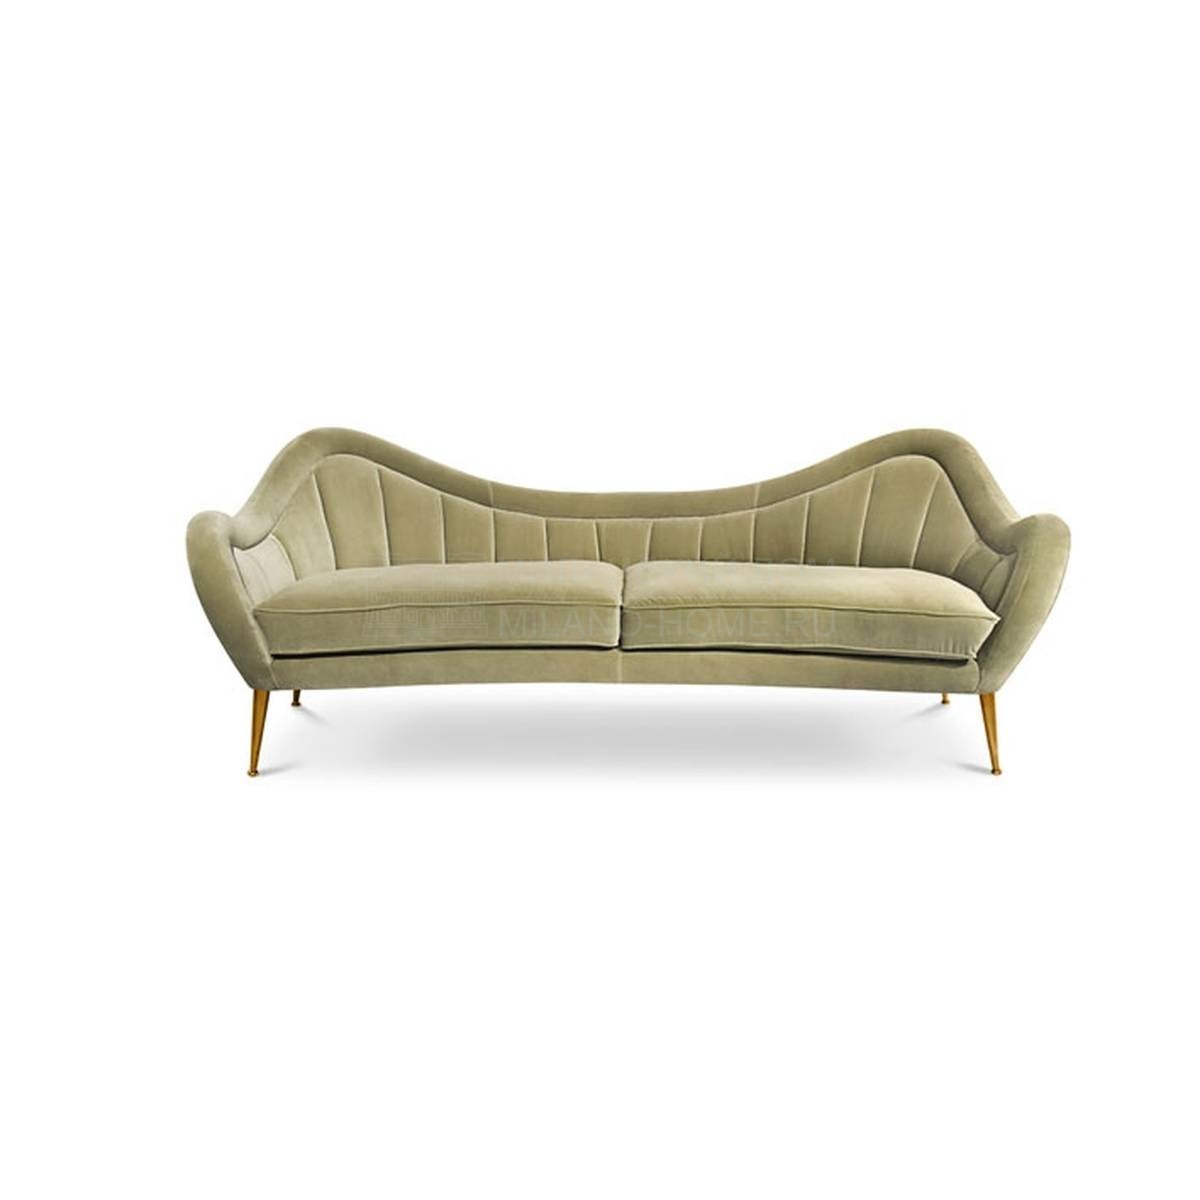 Прямой диван Hermes/sofa из Португалии фабрики BRABBU